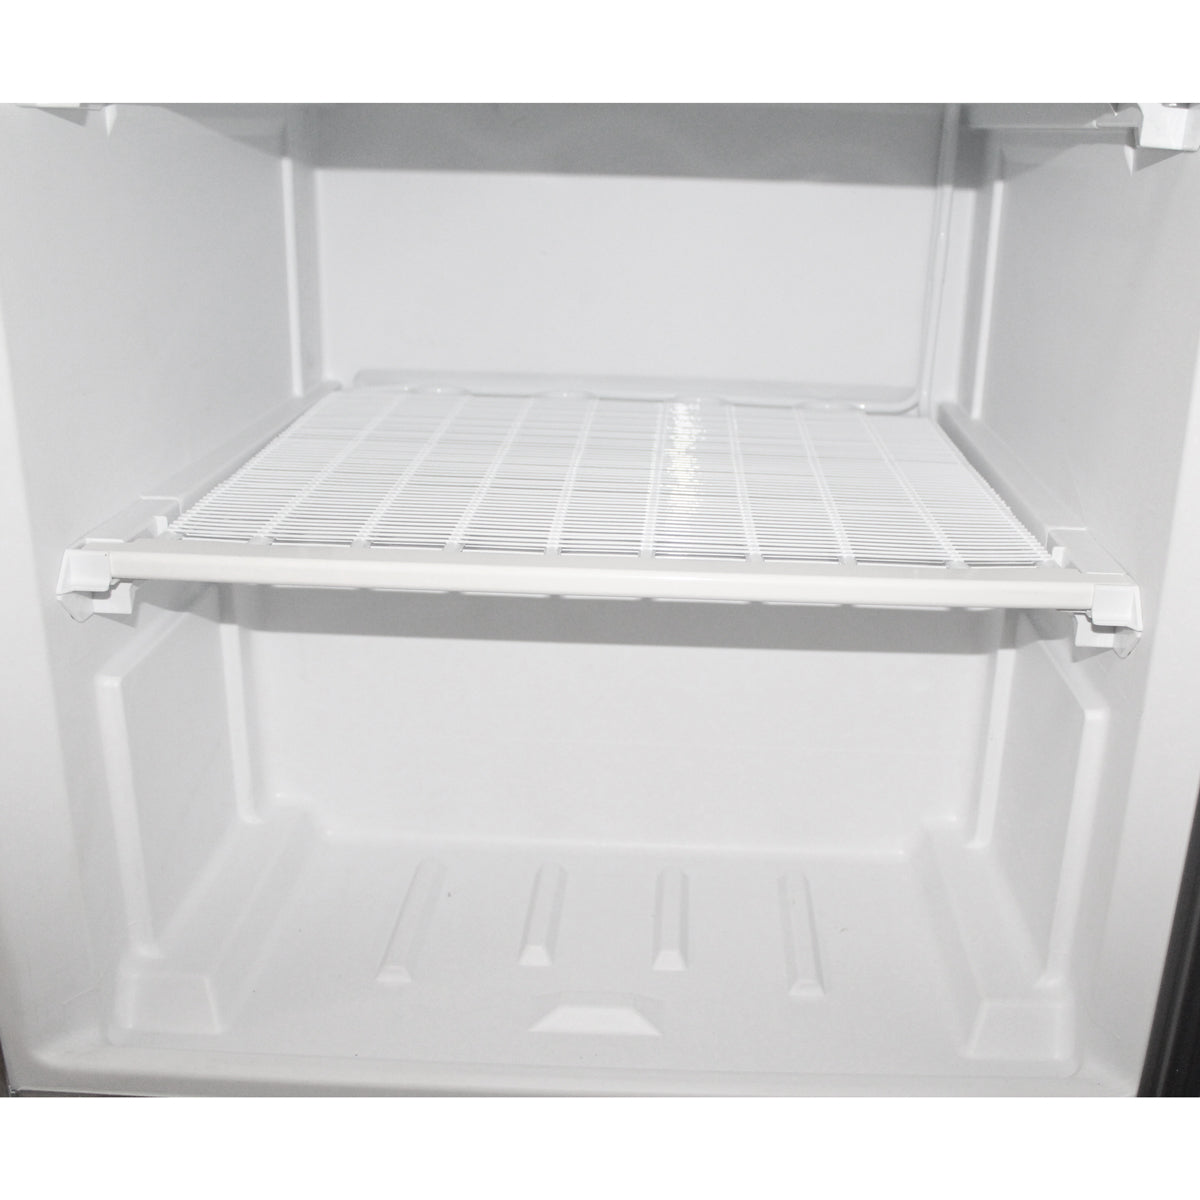 Køleskab - 400 liter - med 1 glasdøre